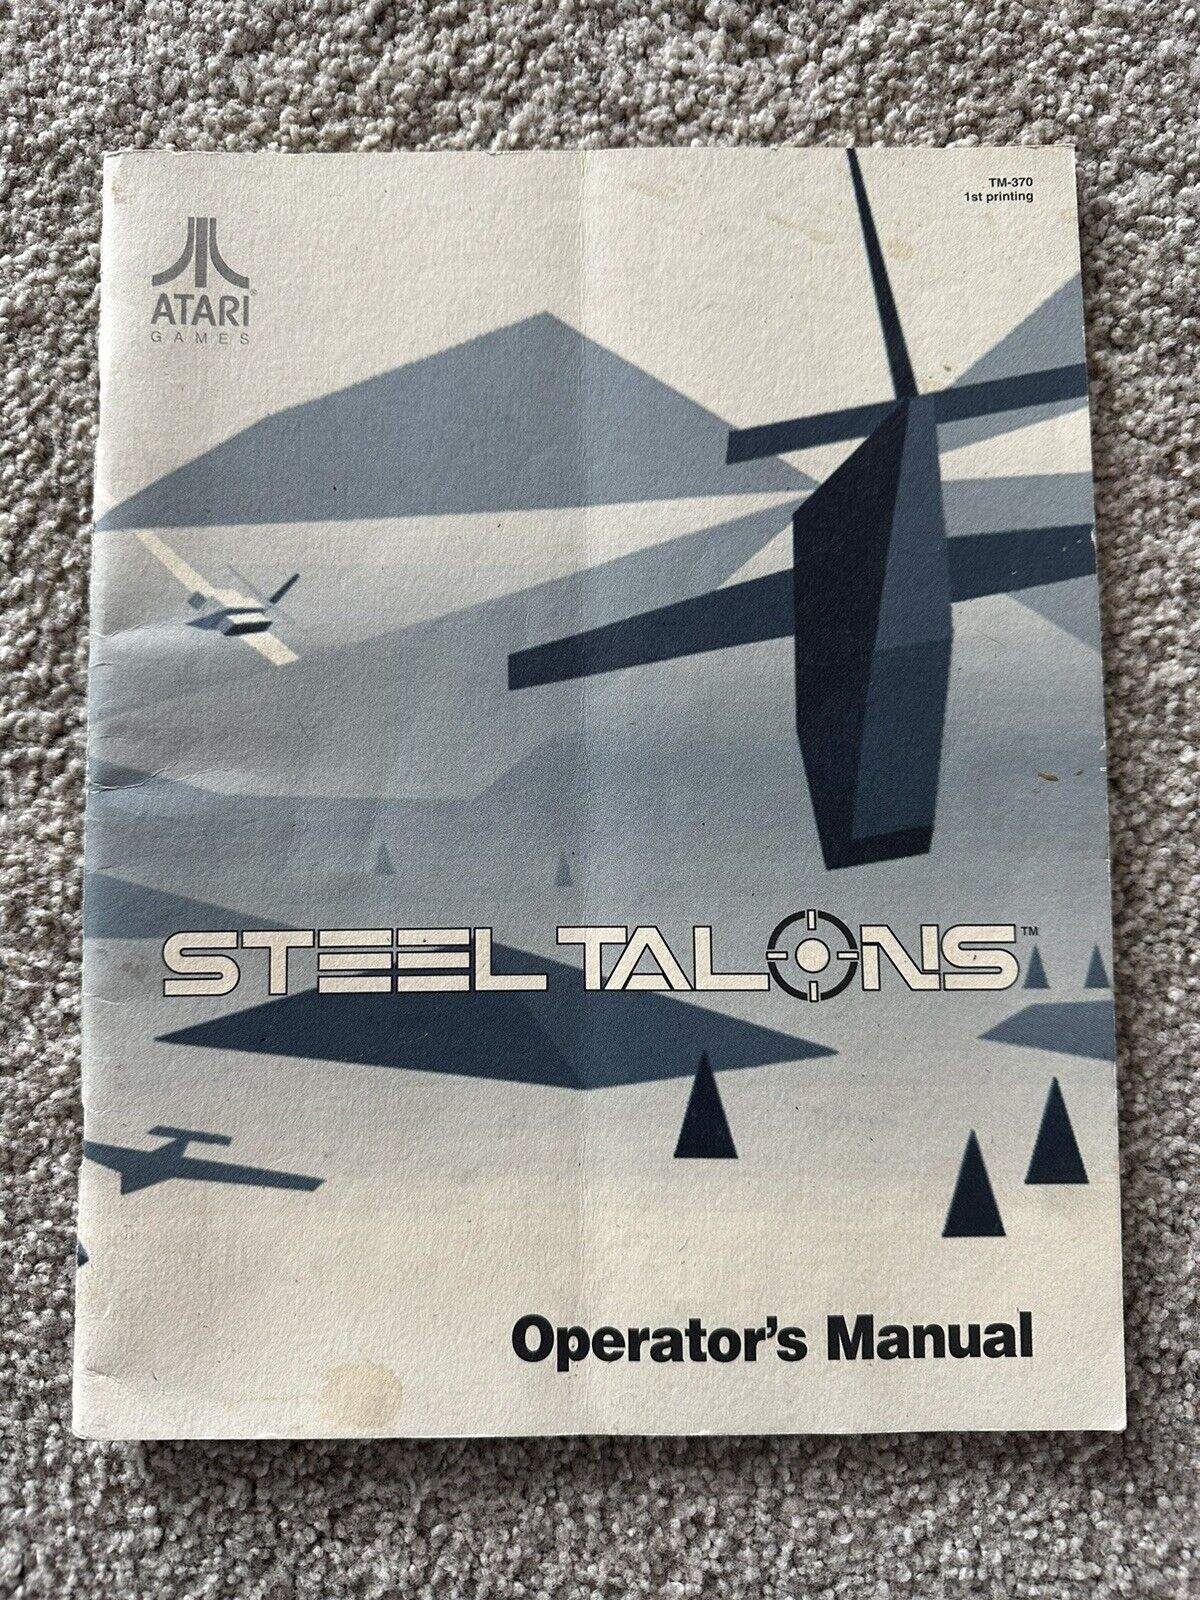 Atari Steel Talons Operator’s Manual 1st Printing Original 